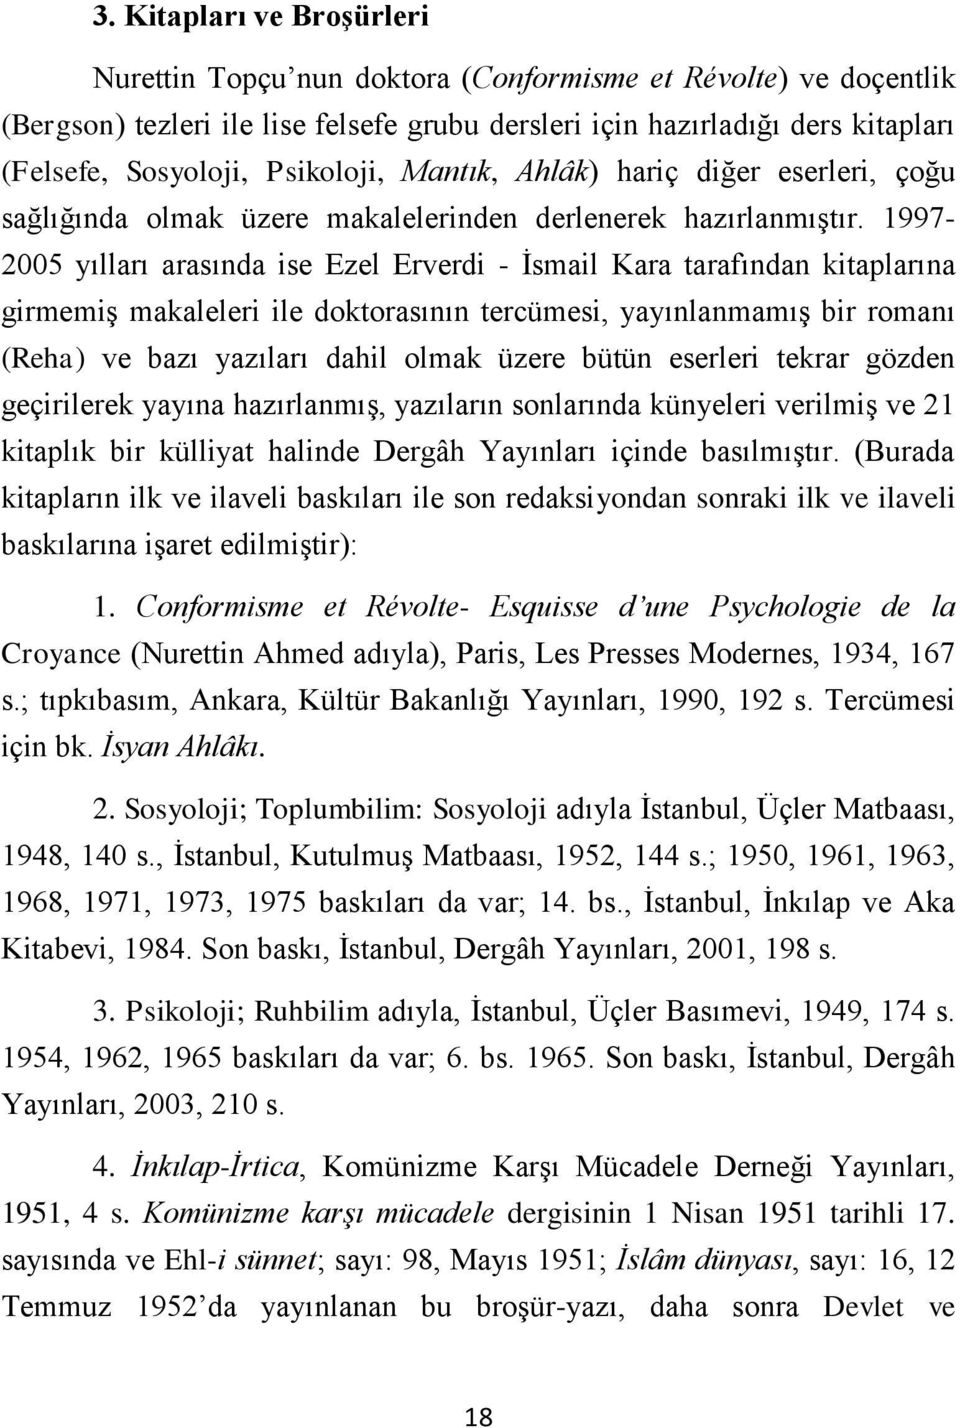 1997-2005 yılları arasında ise Ezel Erverdi - İsmail Kara tarafından kitaplarına girmemiş makaleleri ile doktorasının tercümesi, yayınlanmamış bir romanı (Reha) ve bazı yazıları dahil olmak üzere